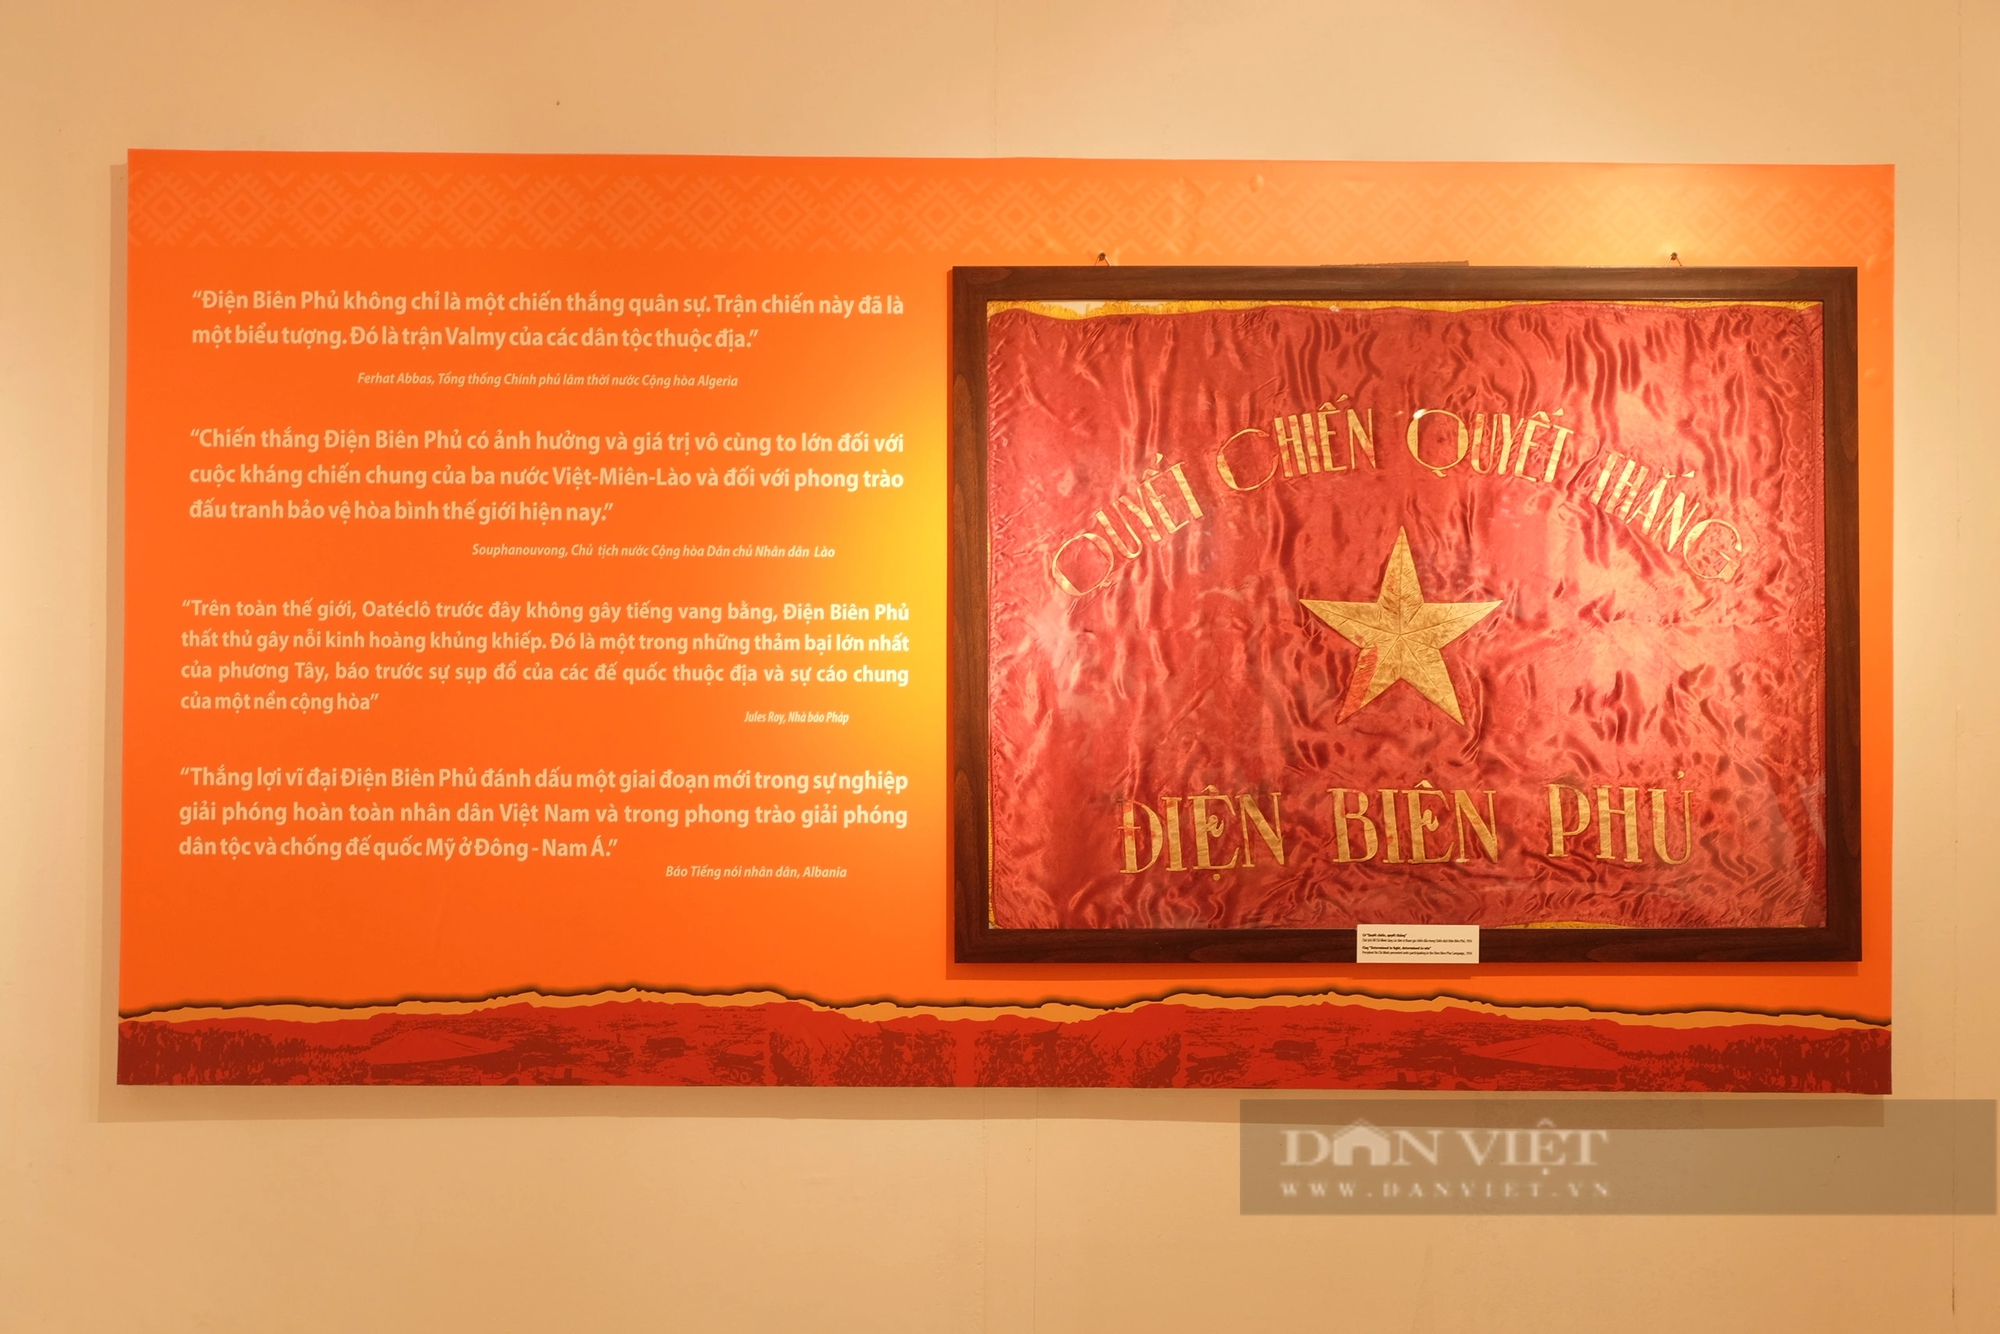 Tái hiện “56 ngày đêm chấn động địa cầu” tại Bảo tàng lịch sử Quân đội Việt Nam- Ảnh 5.